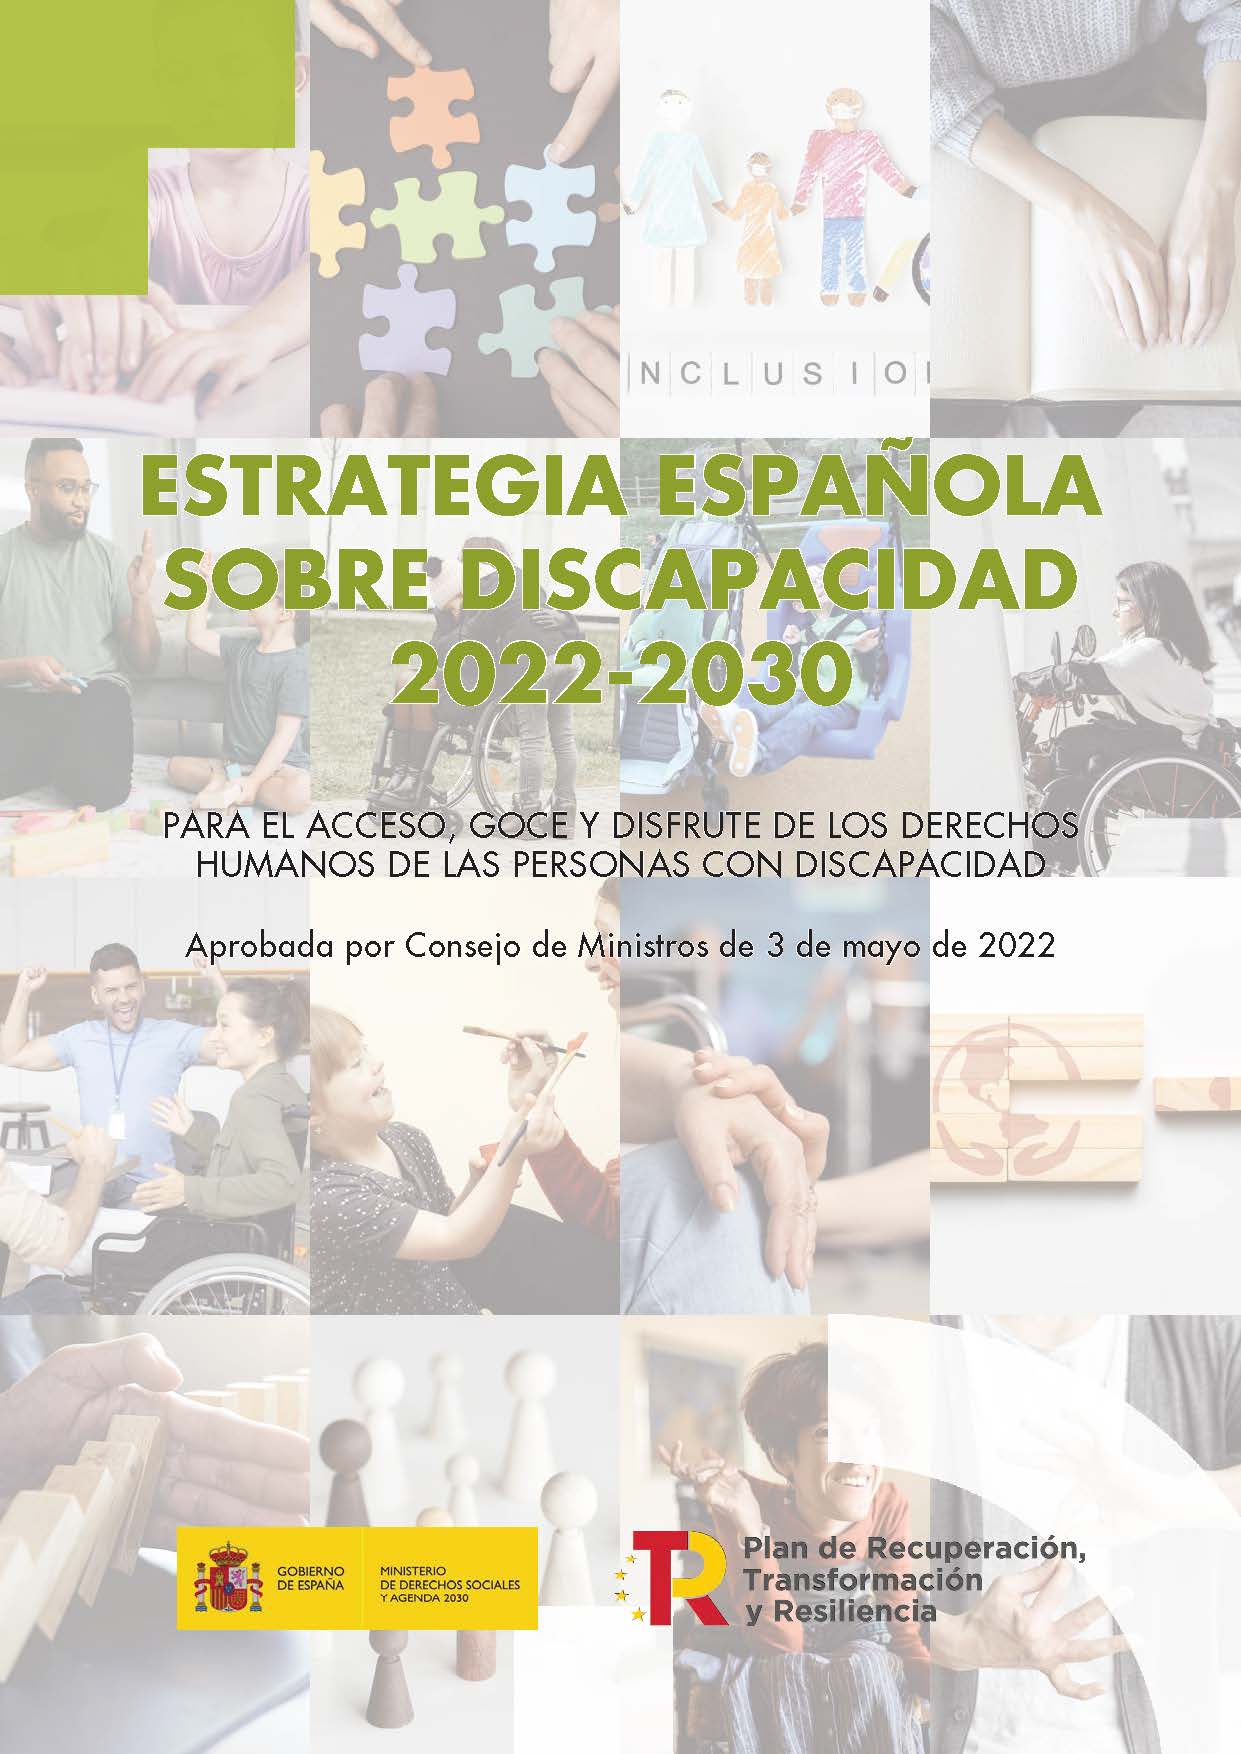 Imagen noticia Portada de la Estrategia Española sobre Discapacidad 2022-2030 del Ministerio de Derechos Sociales y Agenda 2030.